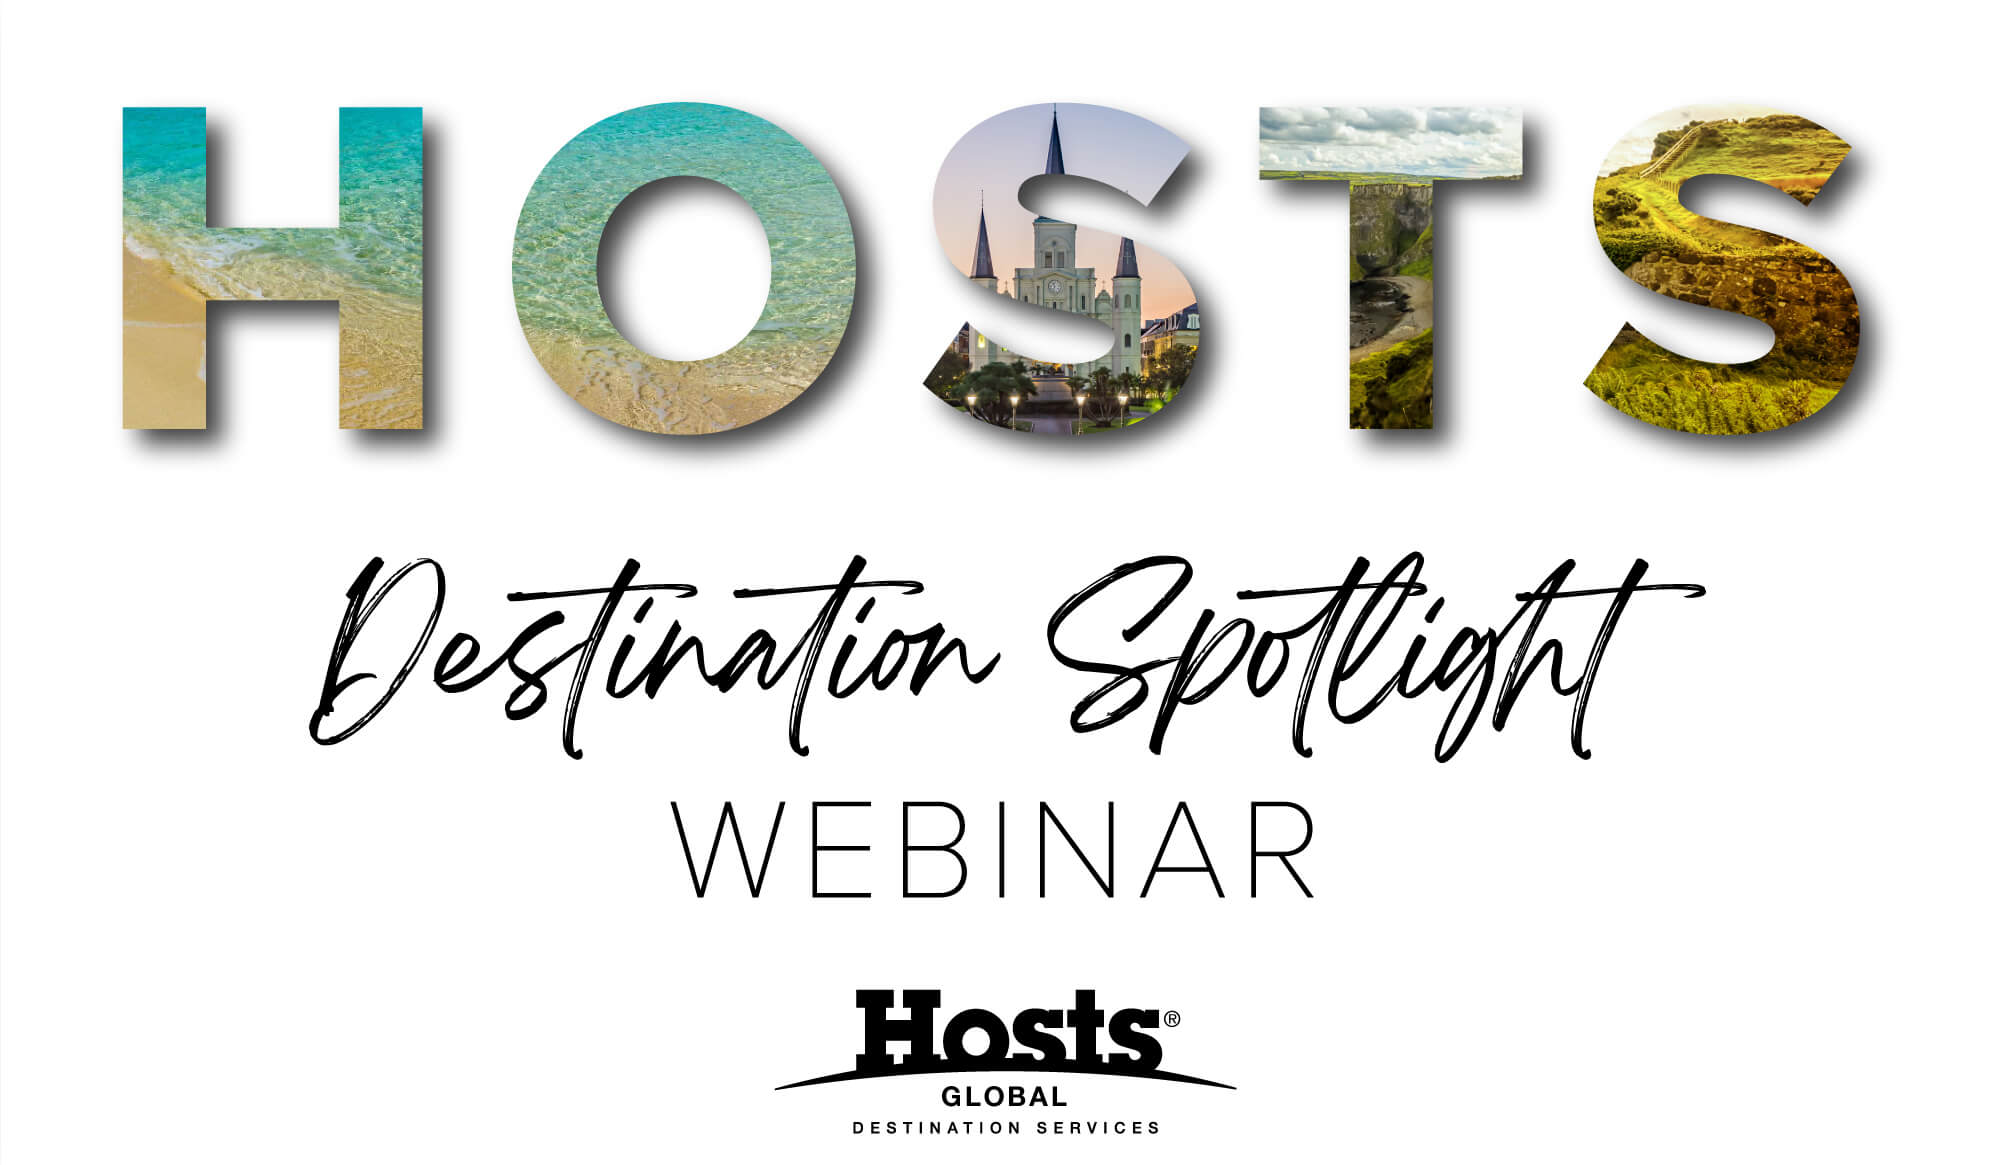 Hosts Destination Spotlight Webinar Header